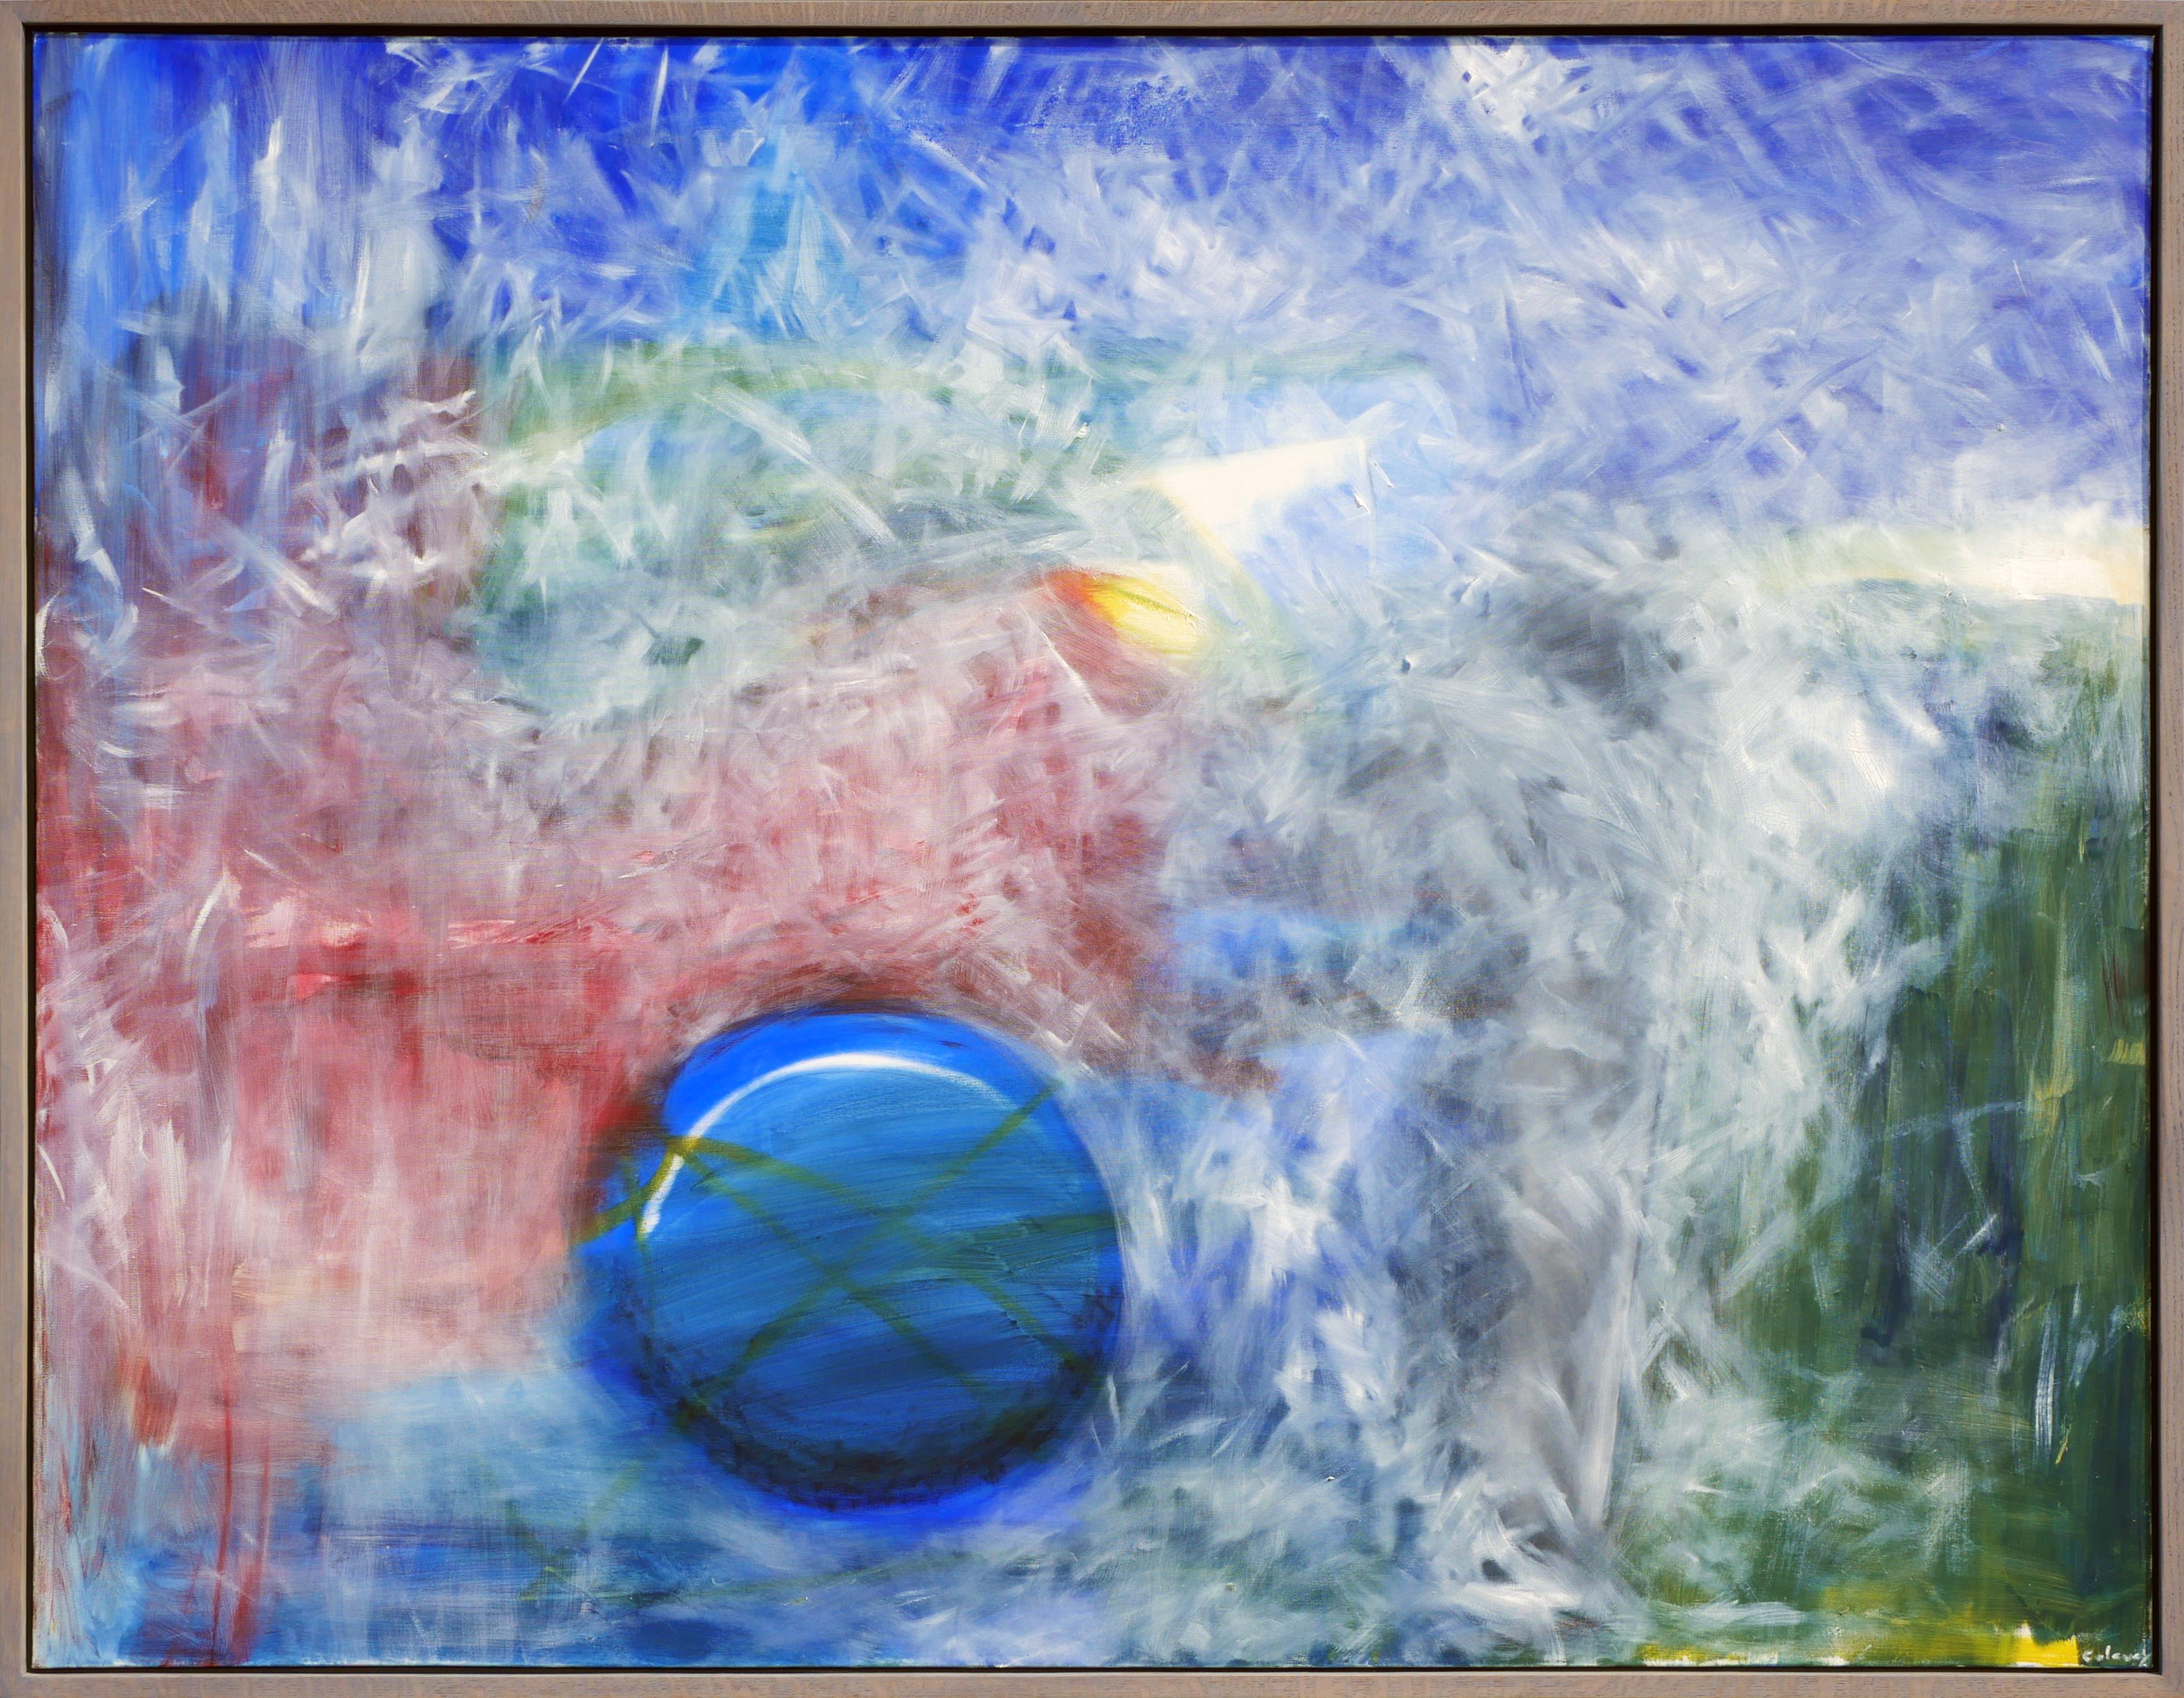 Abstract Painting John Calaway - Peinture expressionniste abstraite bleue, rouge et verte avec éléments géométriques